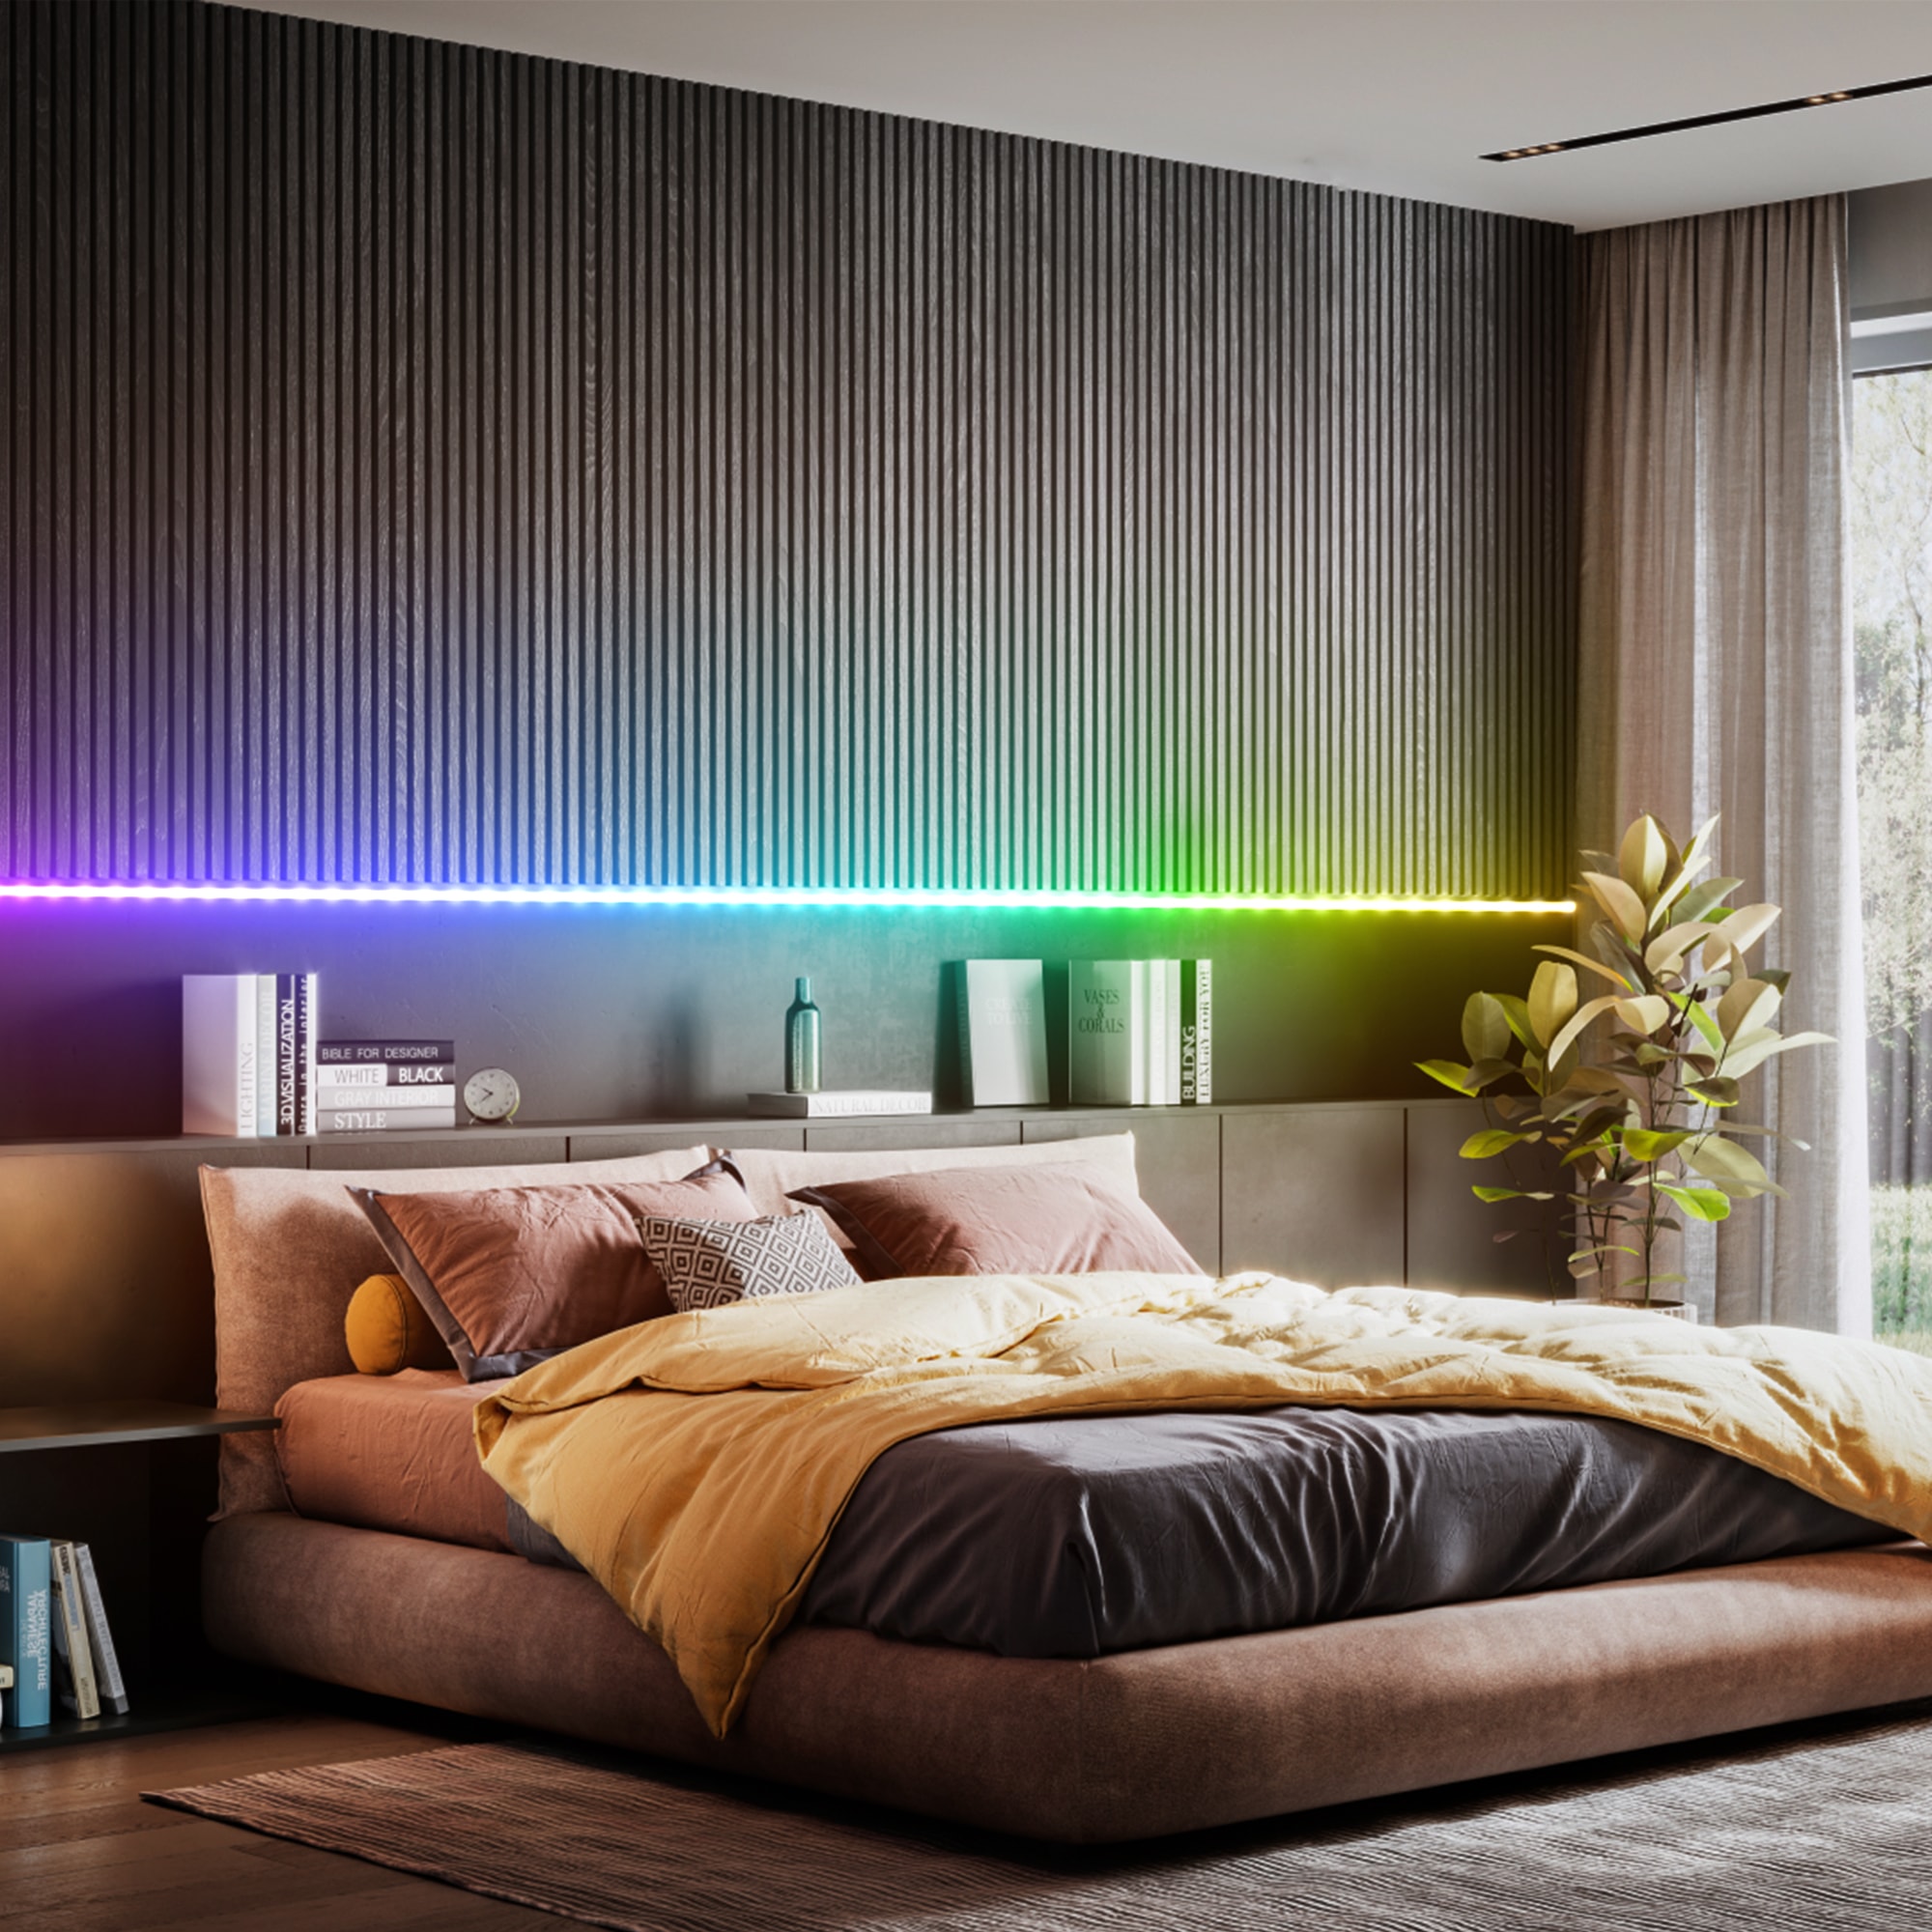 B.K.Licht LED Stripe »USB RGBIC LED Strip, 5 m, mit Farbwechsel«, 150 St.-flammig, Lichtleiste, mit Musiksensor, mit Fernbedienung, selbstklebend